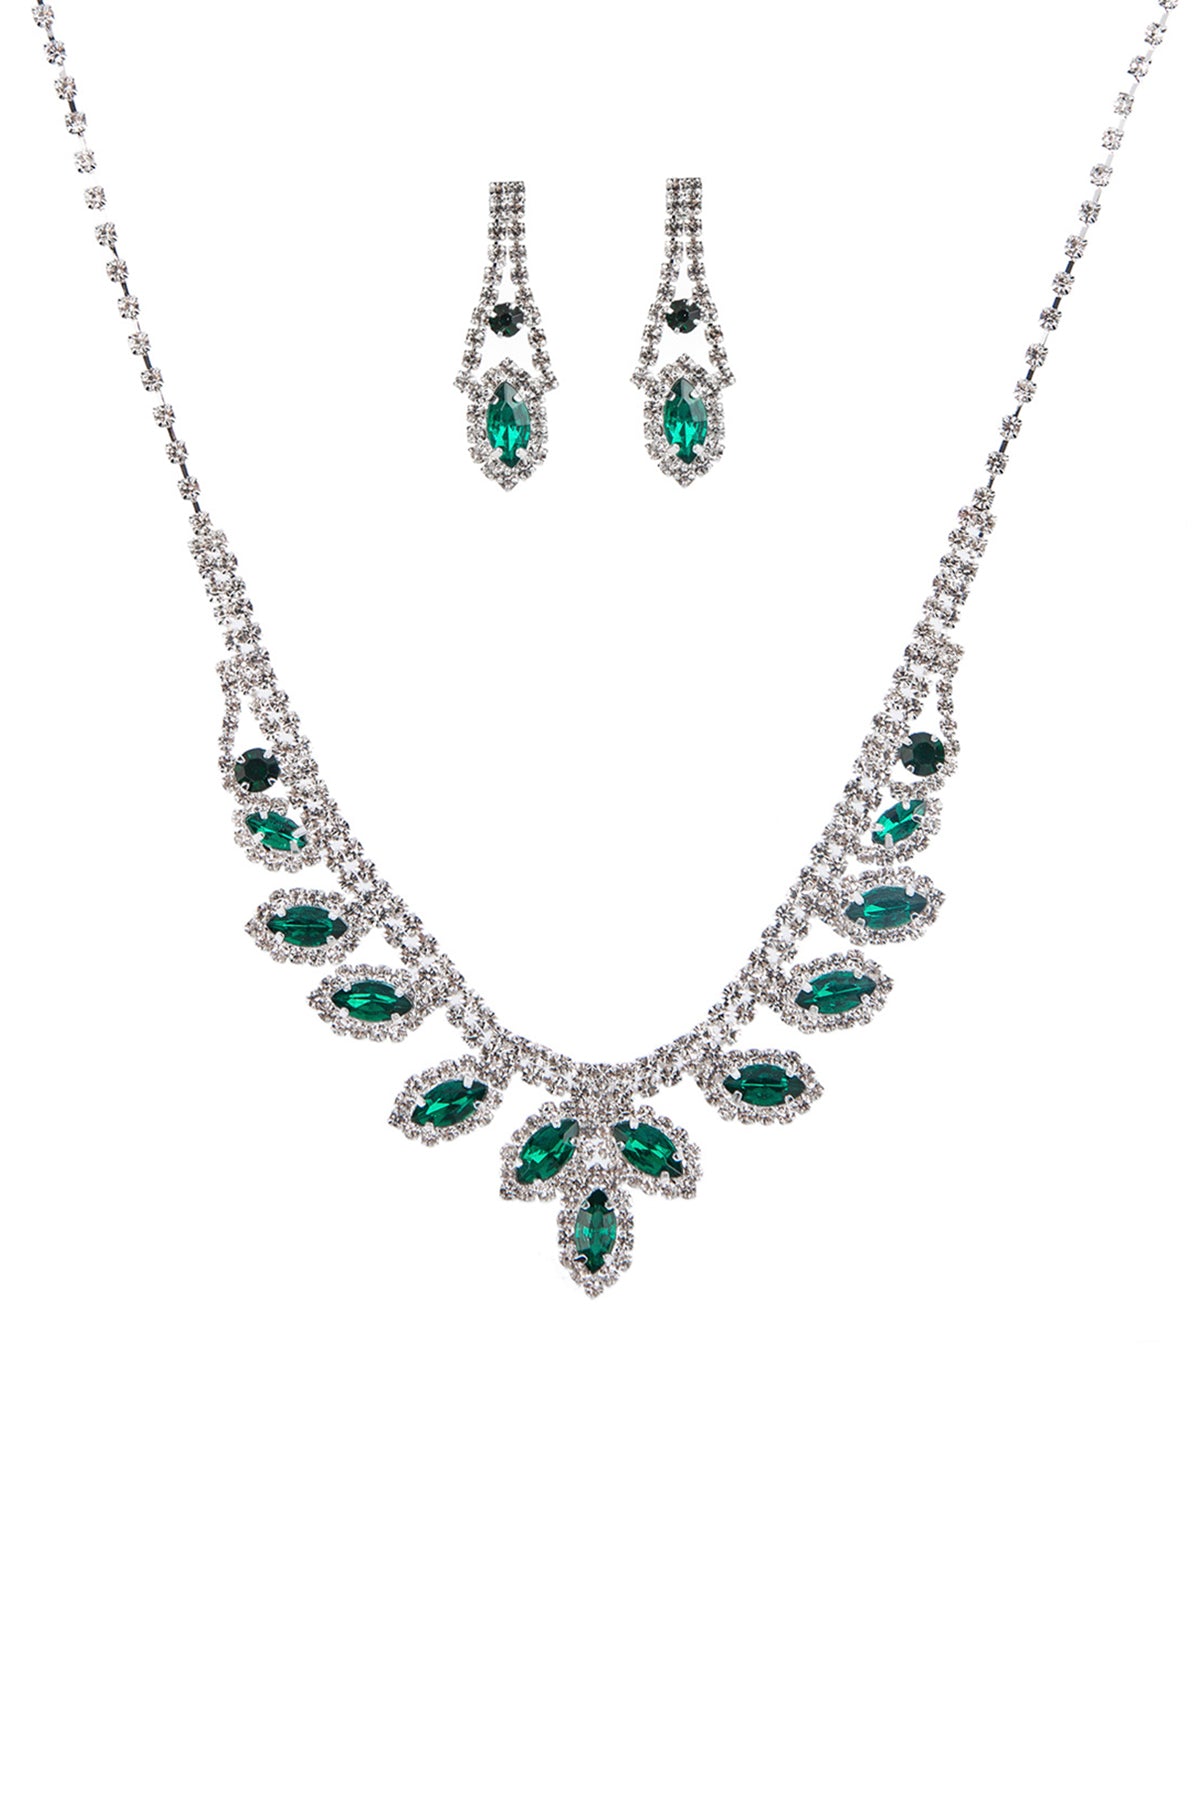 Rhinestone Marquise Wedding Necklace And Earring Set - TiffanyzKlozet